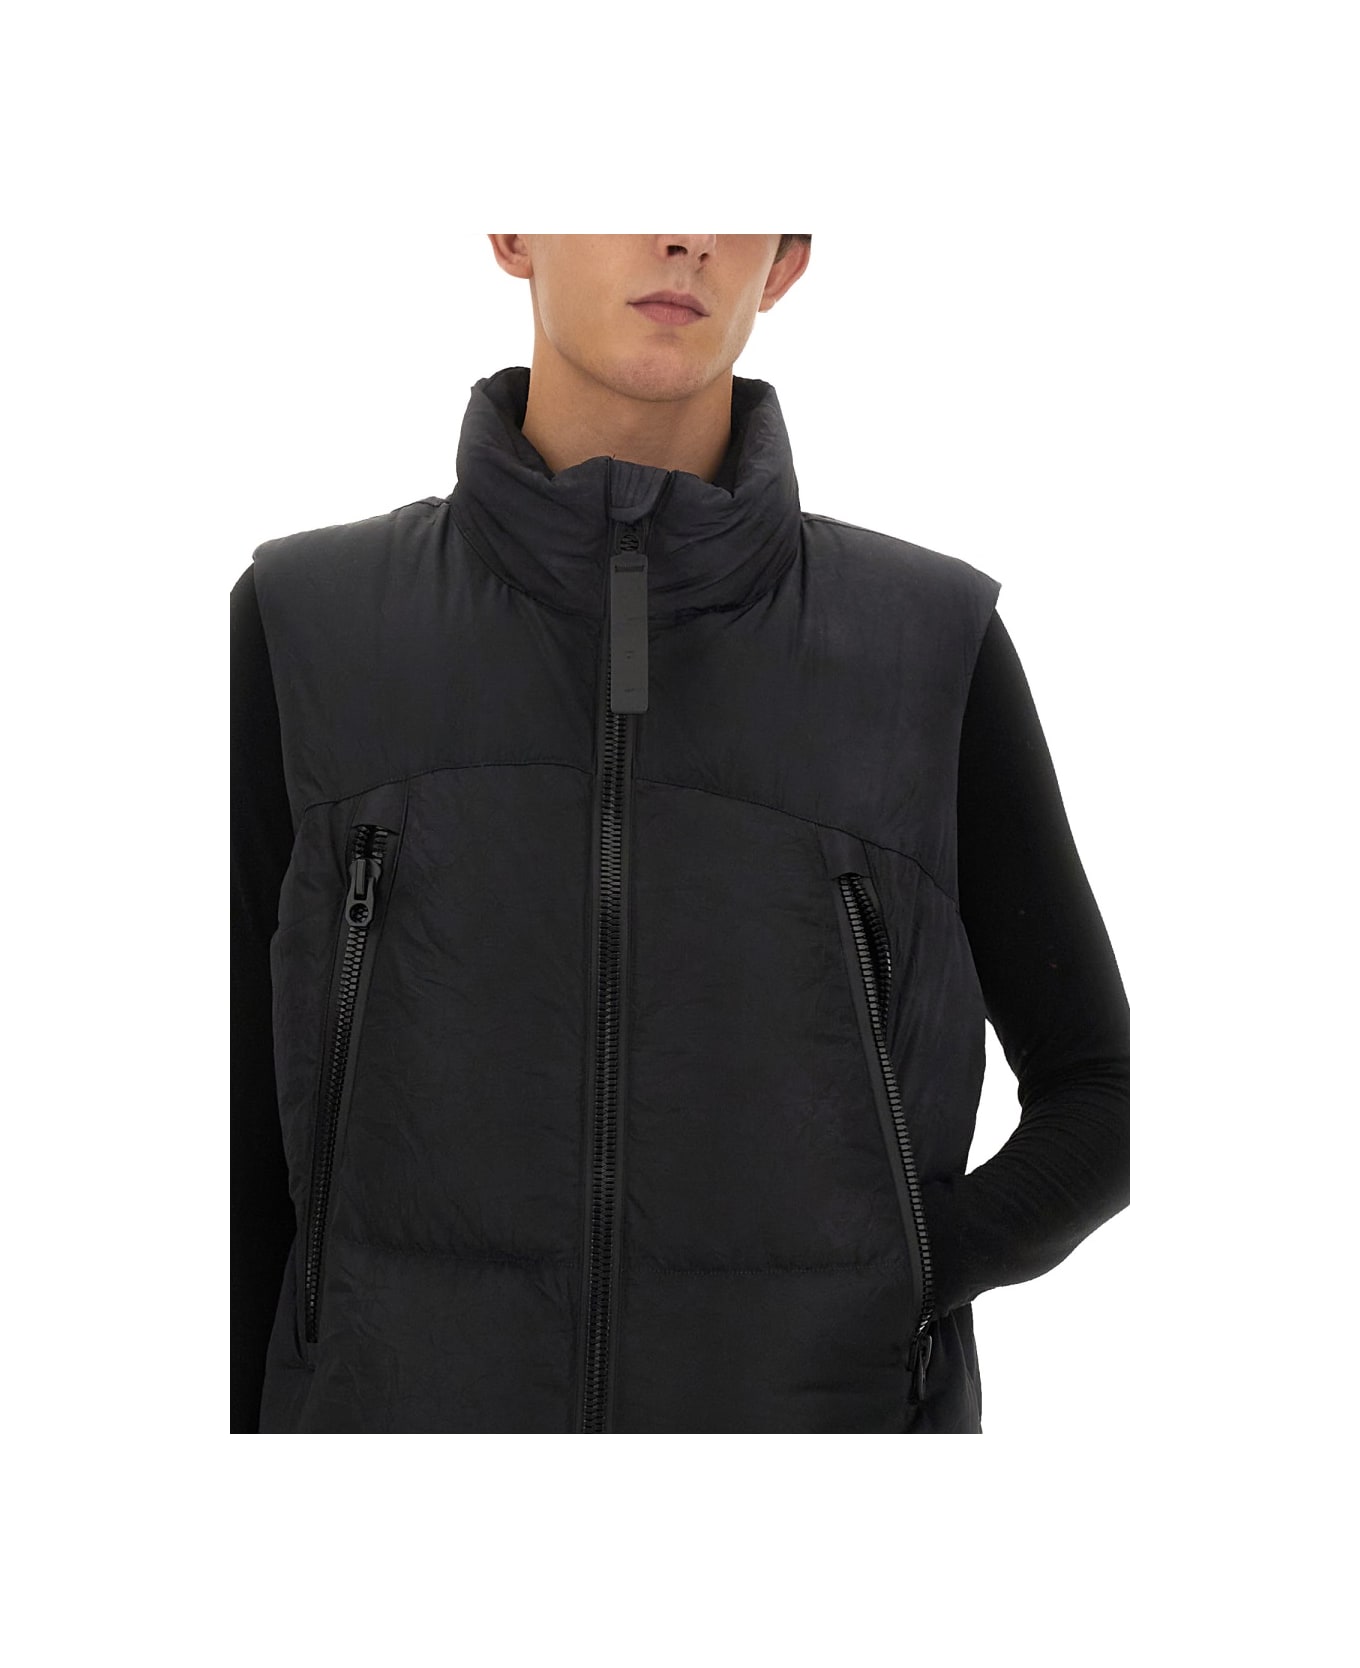 JG1 Jacket With Zip - BLACK